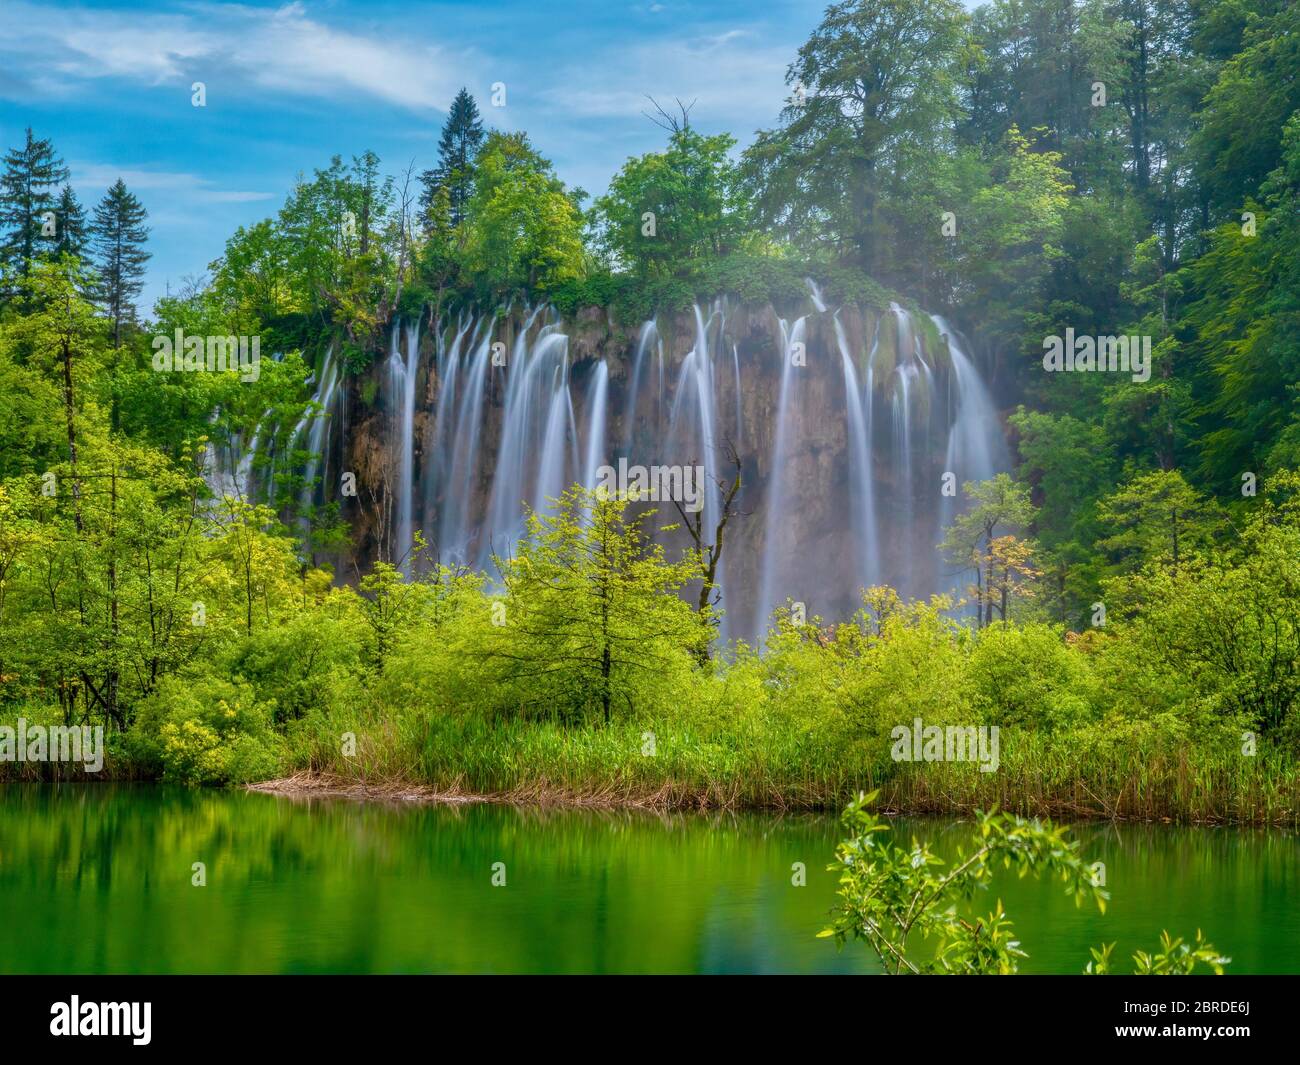 Lunga esposizione di una bella serie di cascate, adagiato nella vibrante foresta verde del Parco Nazionale dei Laghi di Plitvice, Croazia. Foto Stock